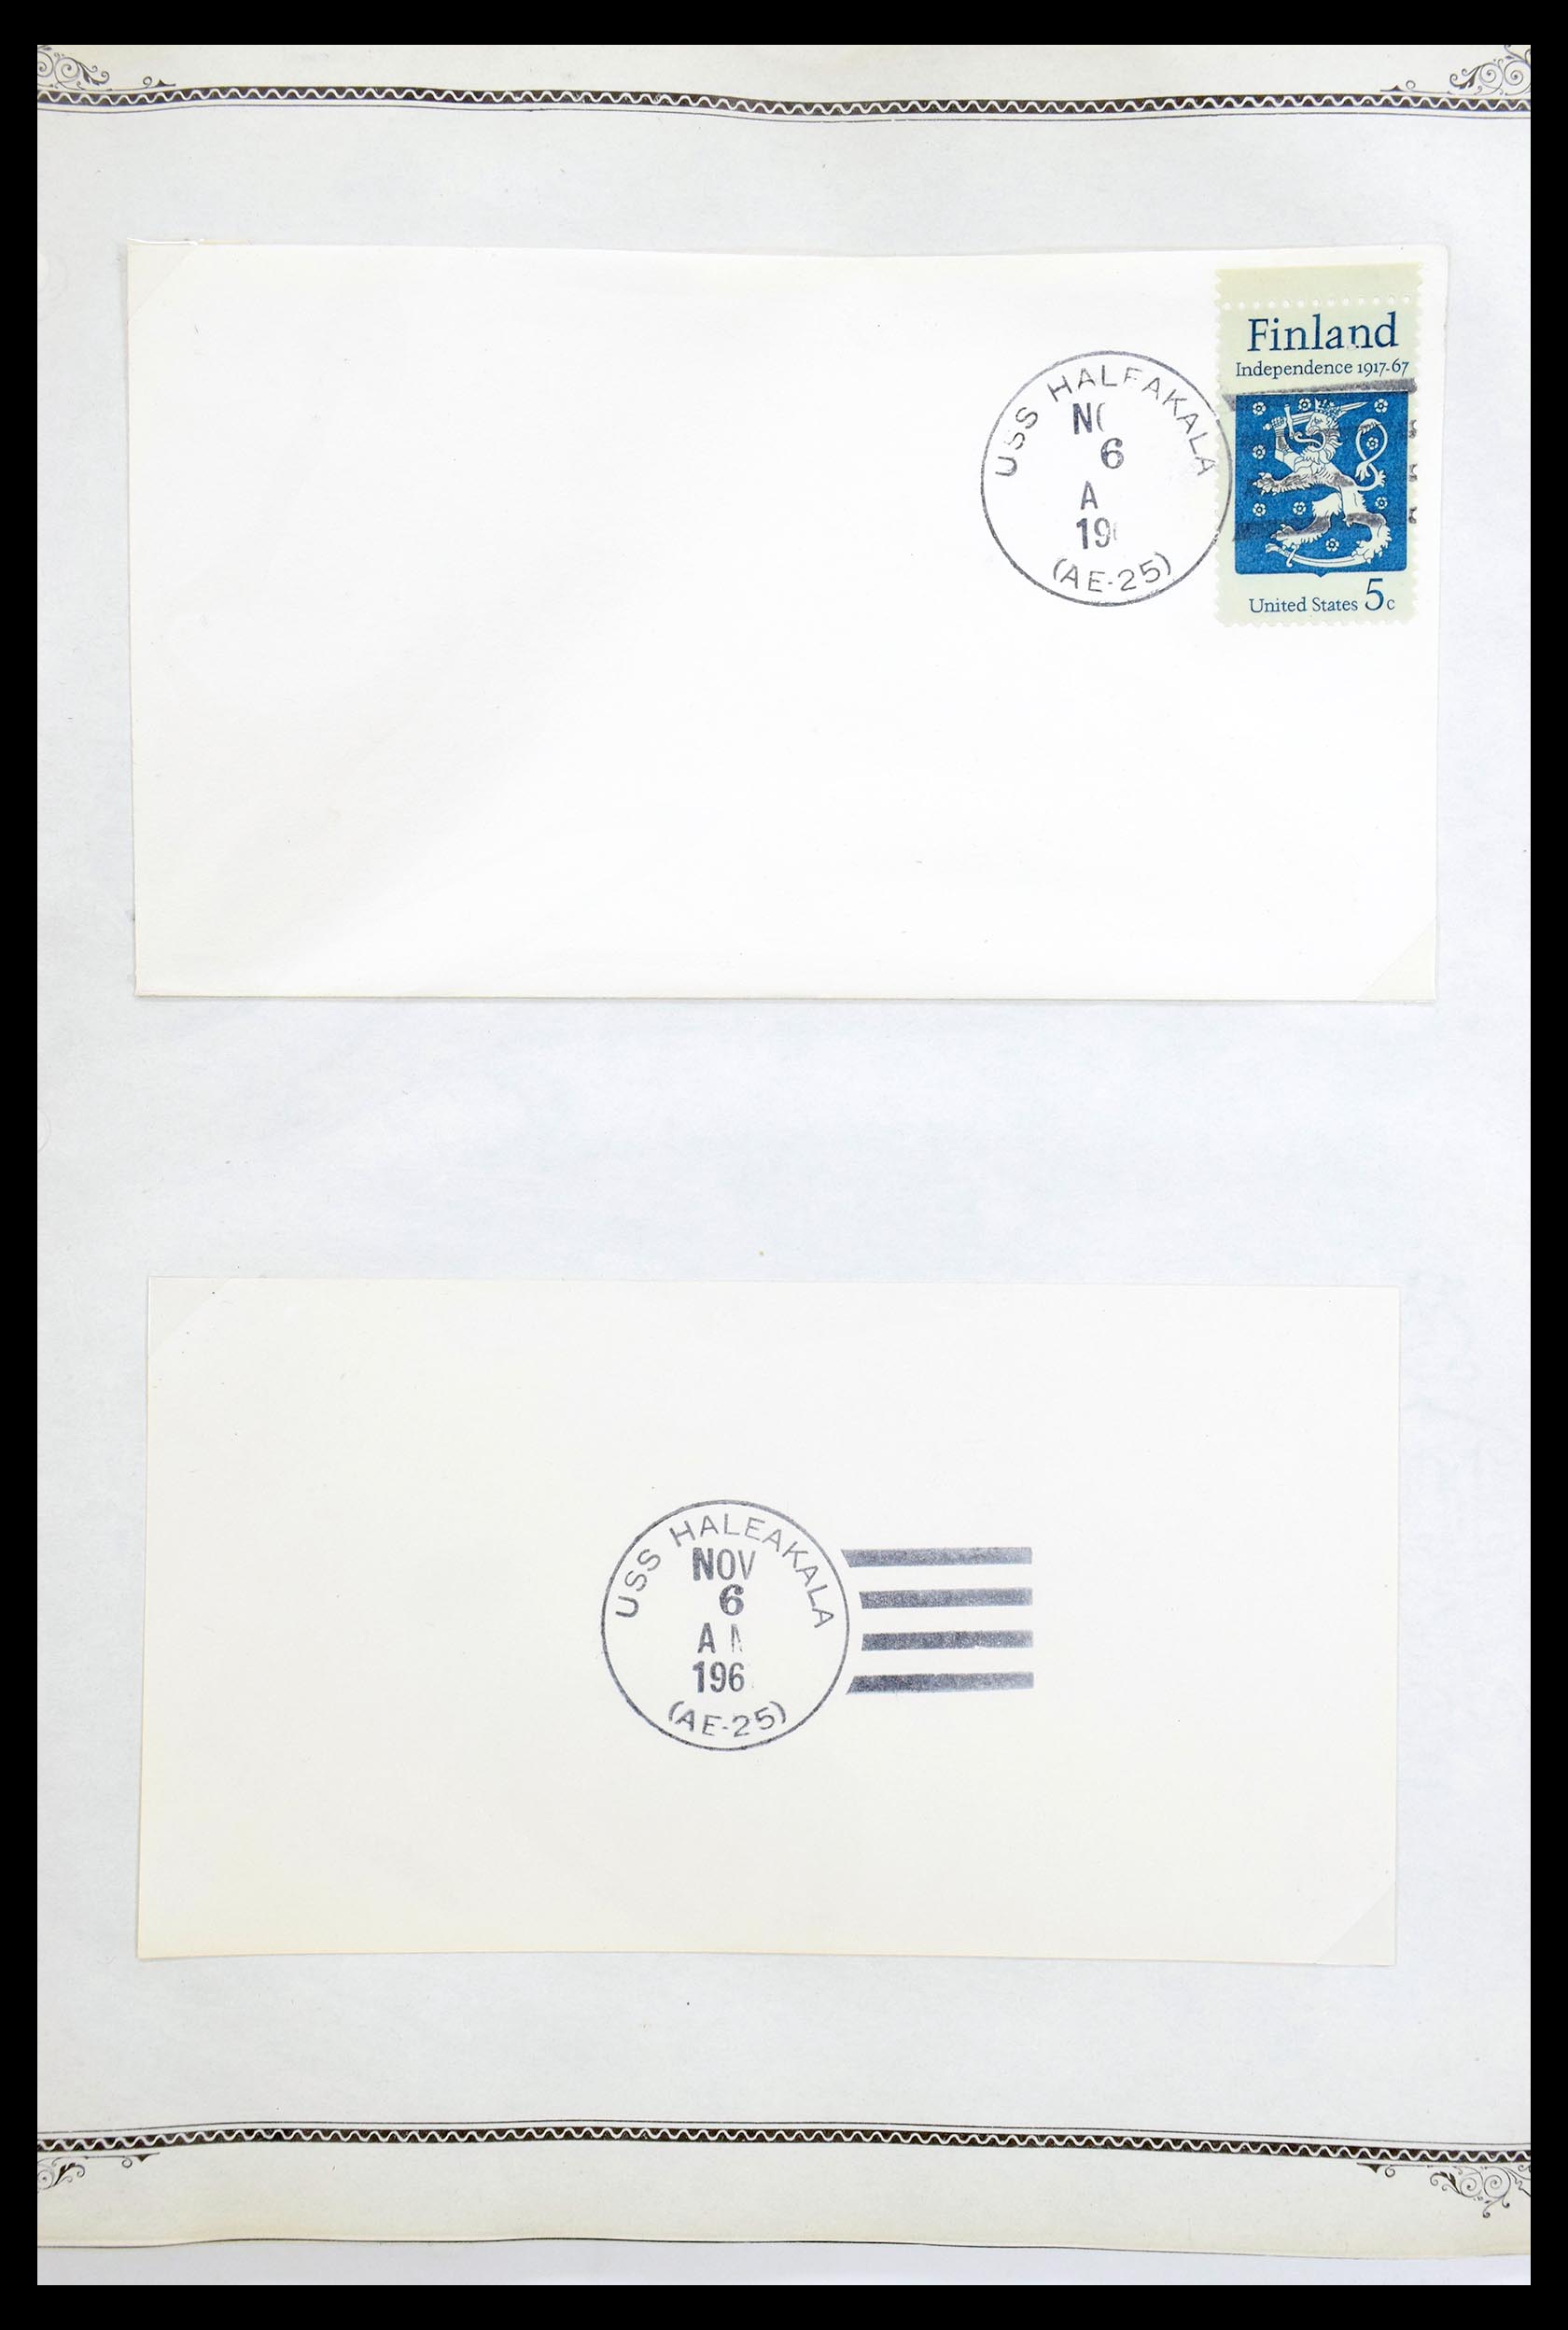 30341 022 - 30341 USA scheepspost brieven 1930-1970.